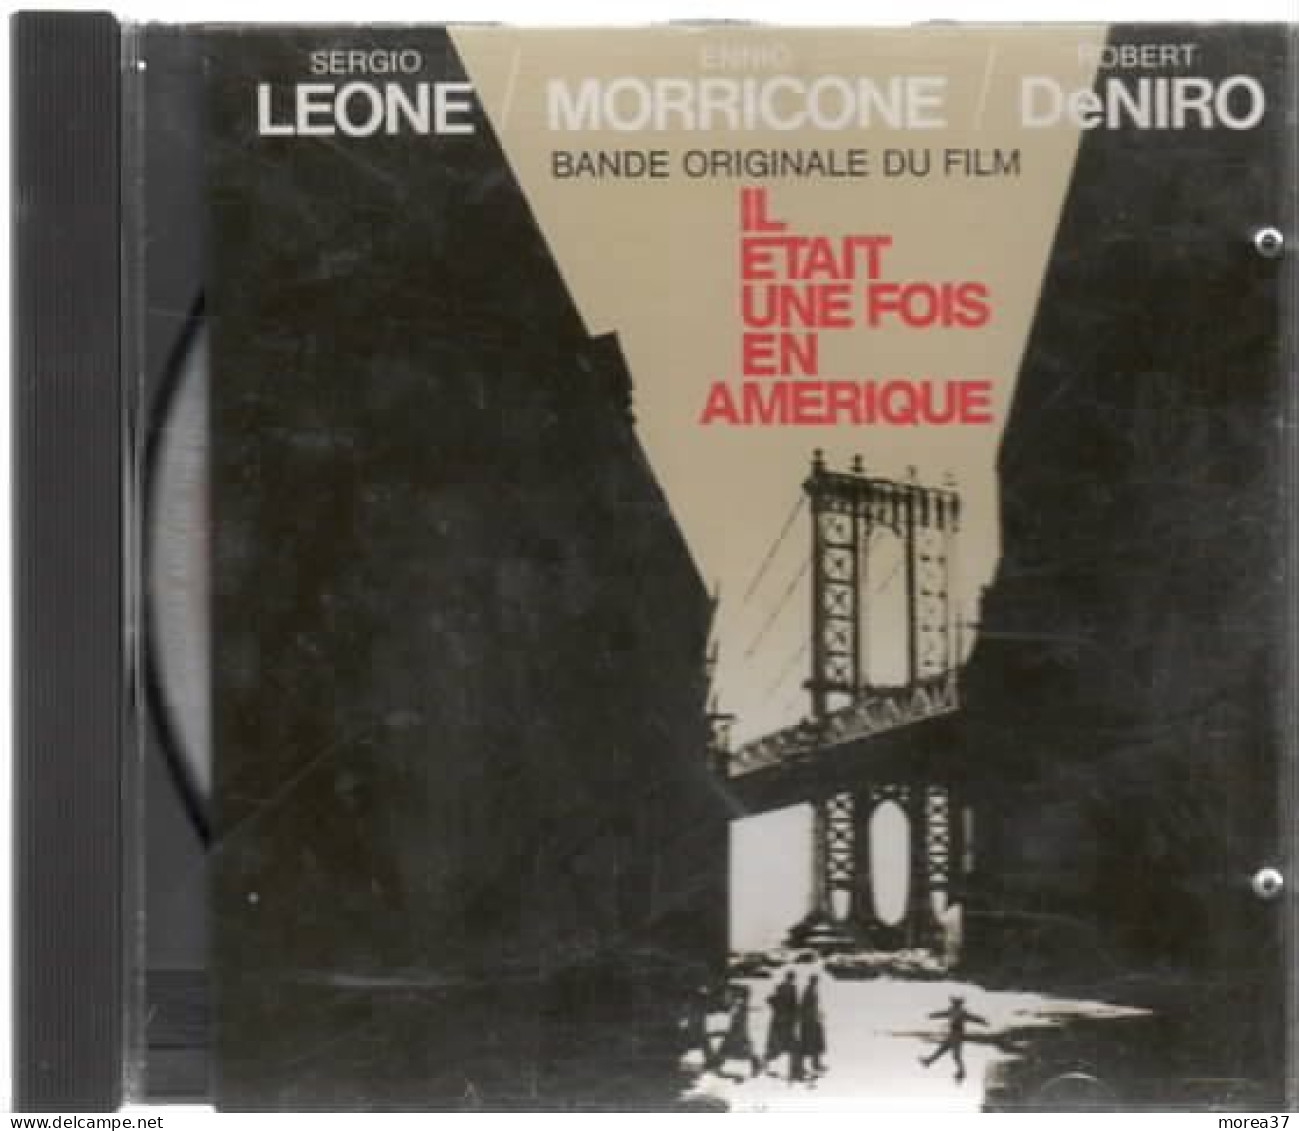 IL ETAIT UNE FOIS EN AMERIQUE   De ENNIO MORRICONE Et SERGIO LEONE - Soundtracks, Film Music